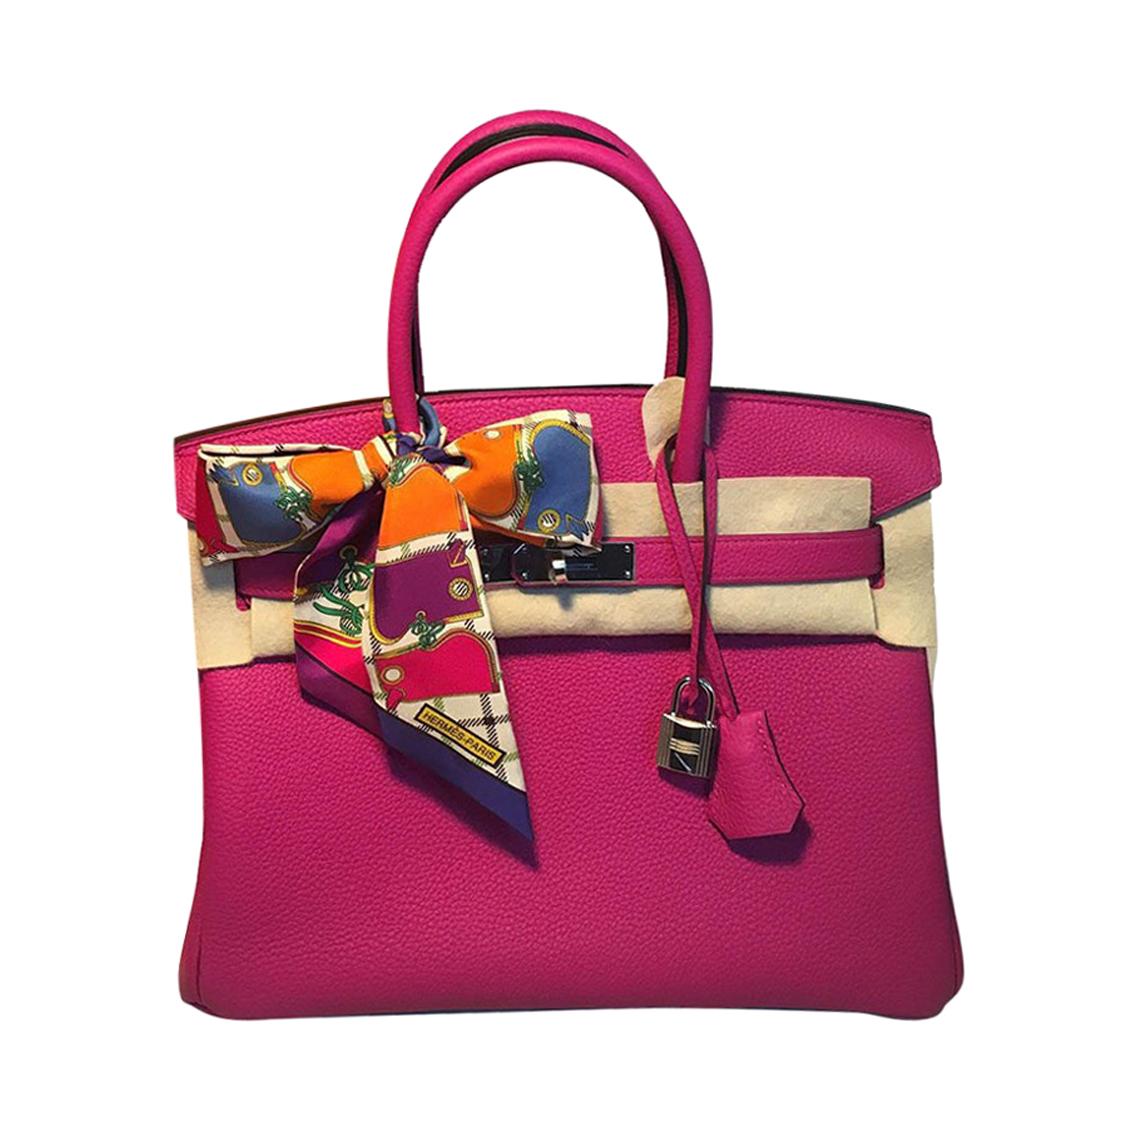 NEW HERMES Rose Pourpre Togo PHW 30cm Pink Birkin Bag